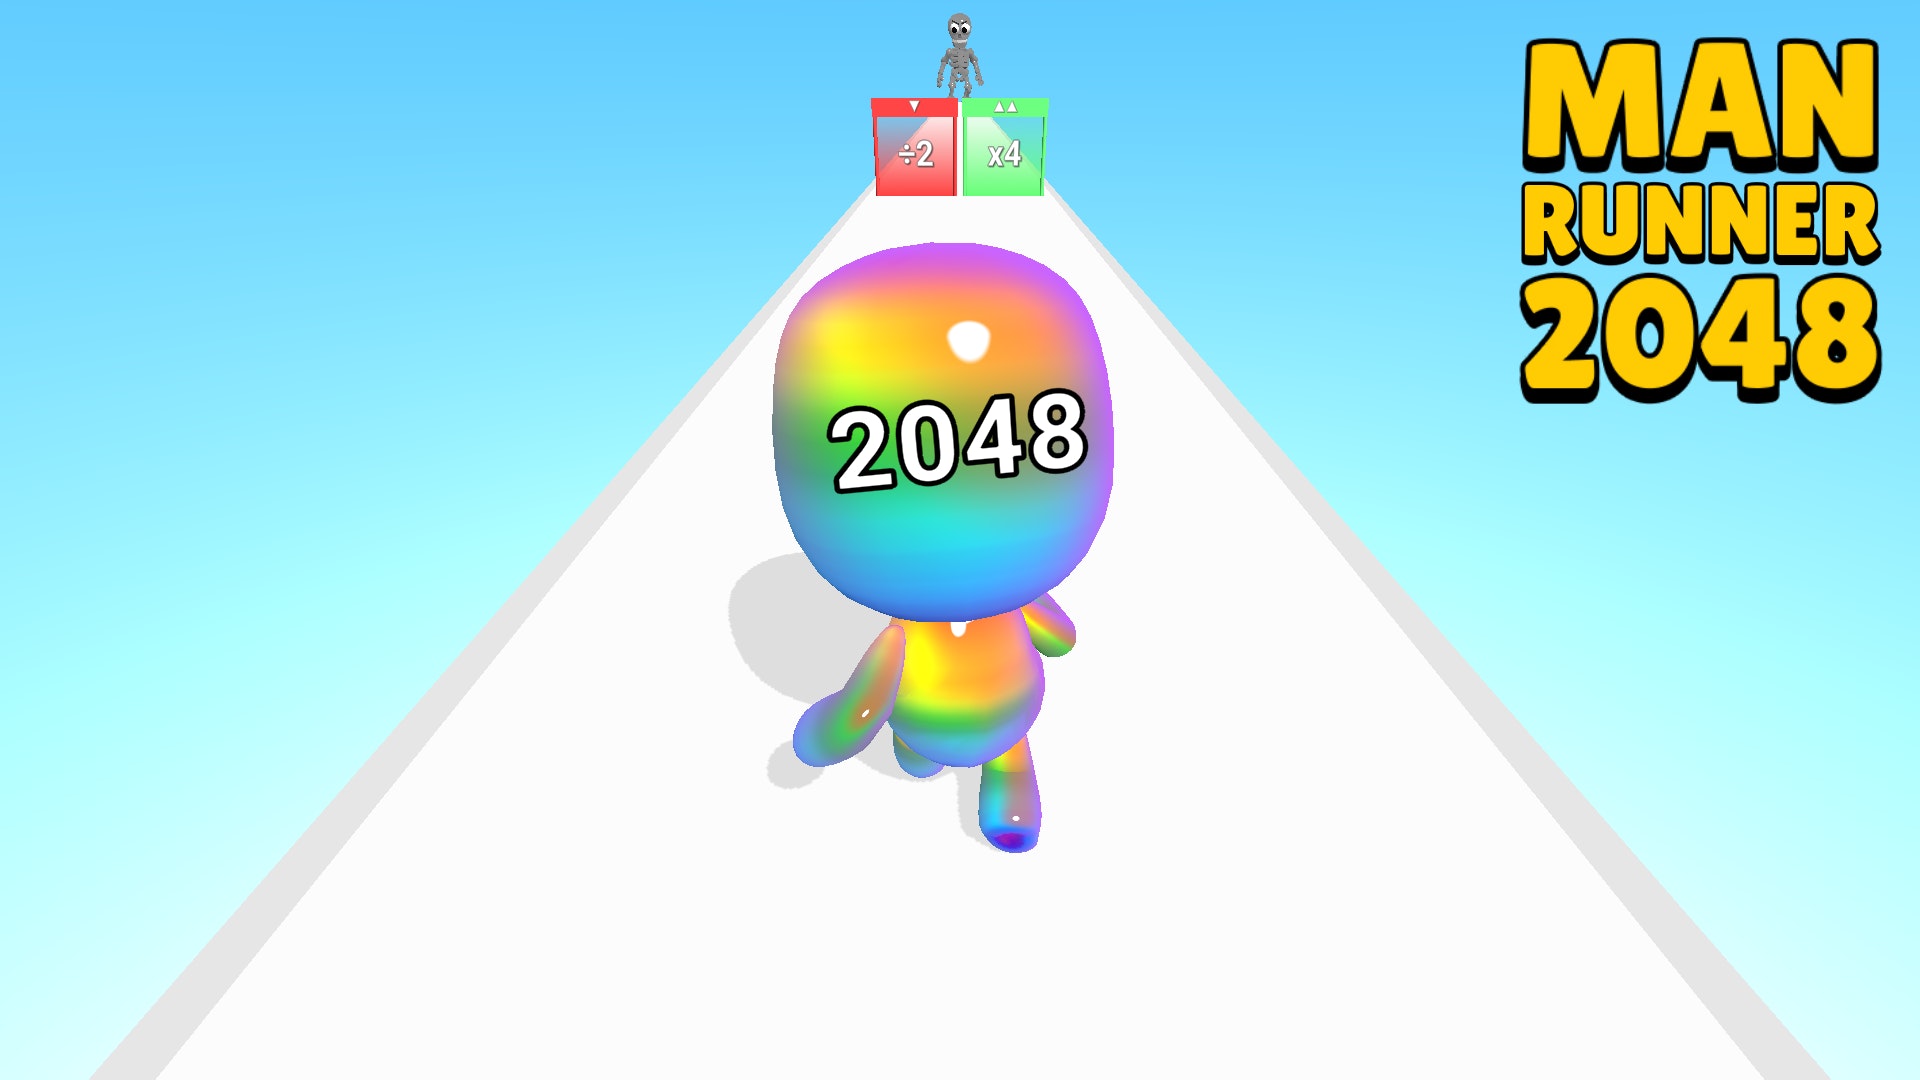 Released - 2048.io - An online 2048 battle